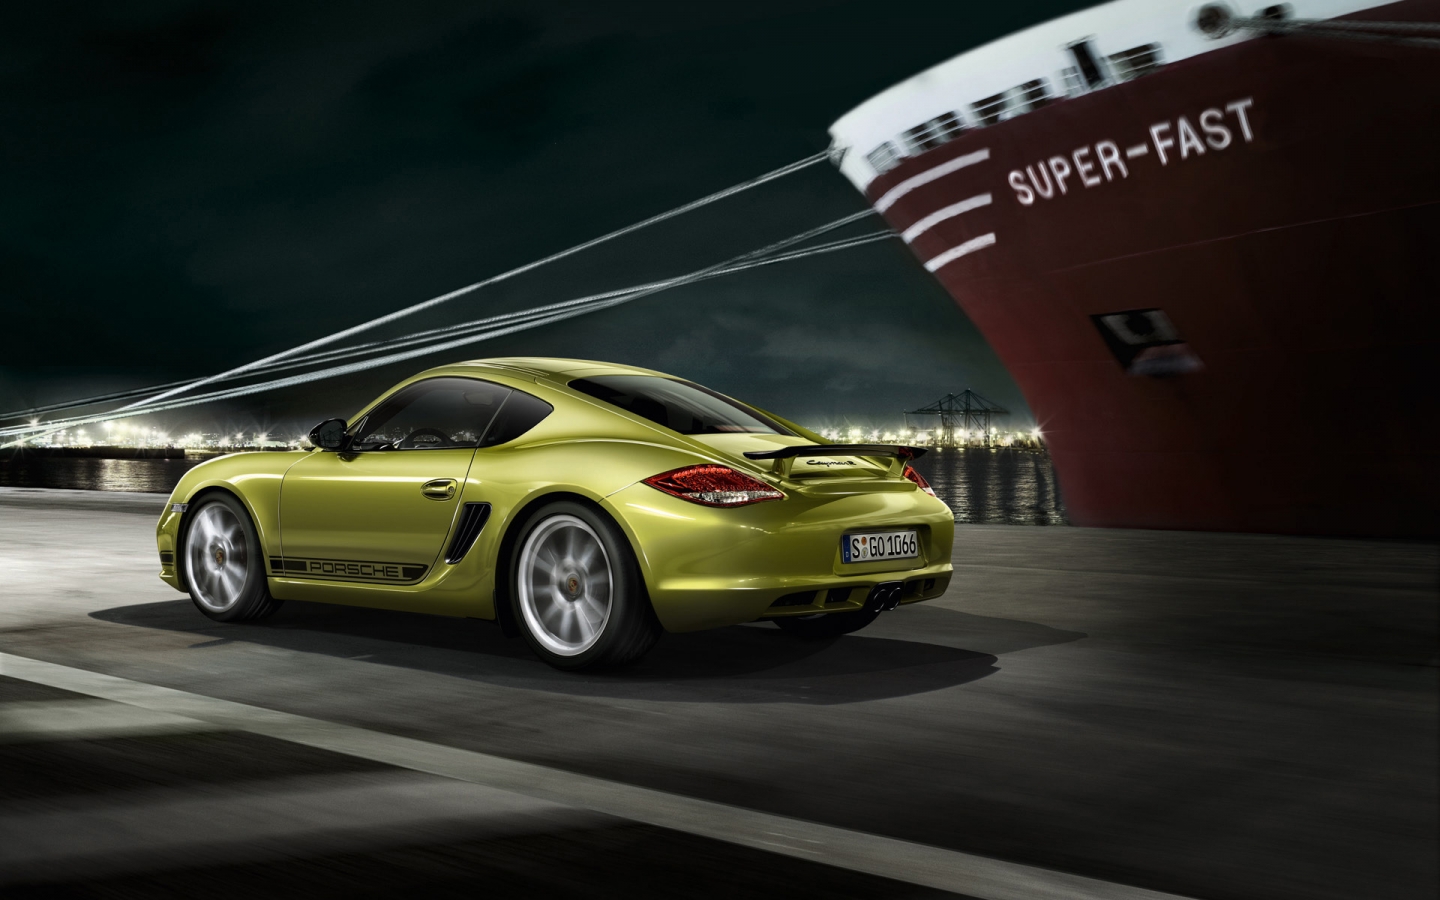 2011 Porsche Cayman R Speed for 1440 x 900 widescreen resolution